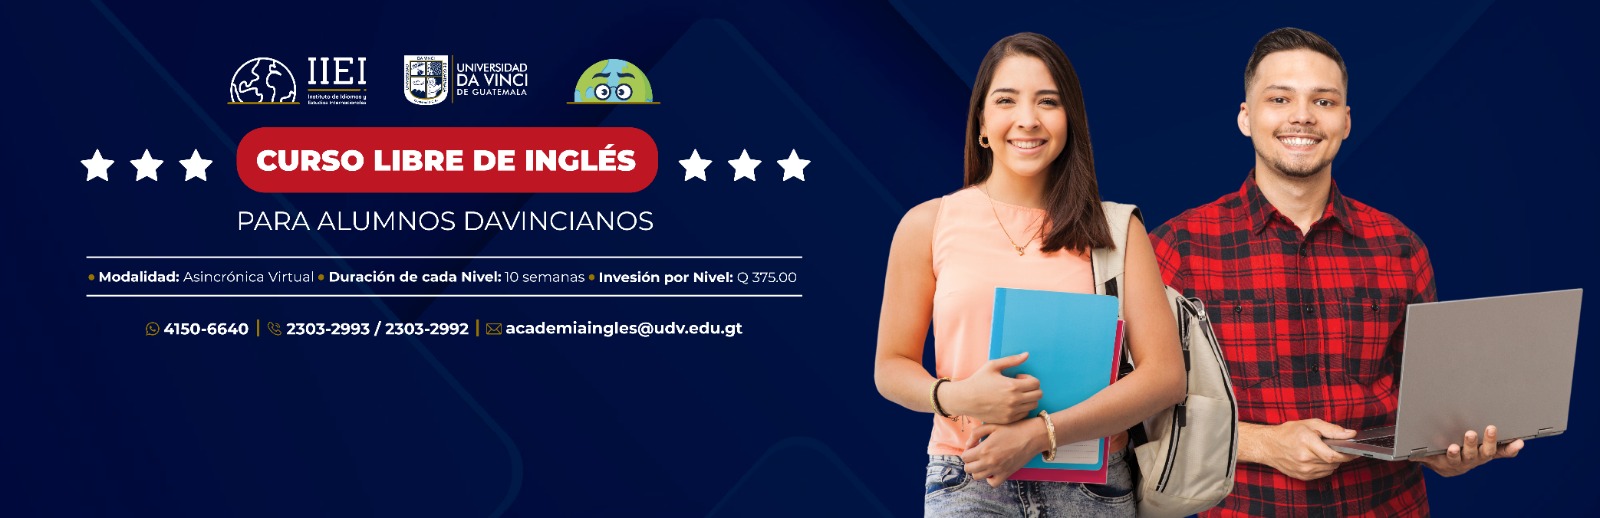  | Universidad da Vinci de Guatemala